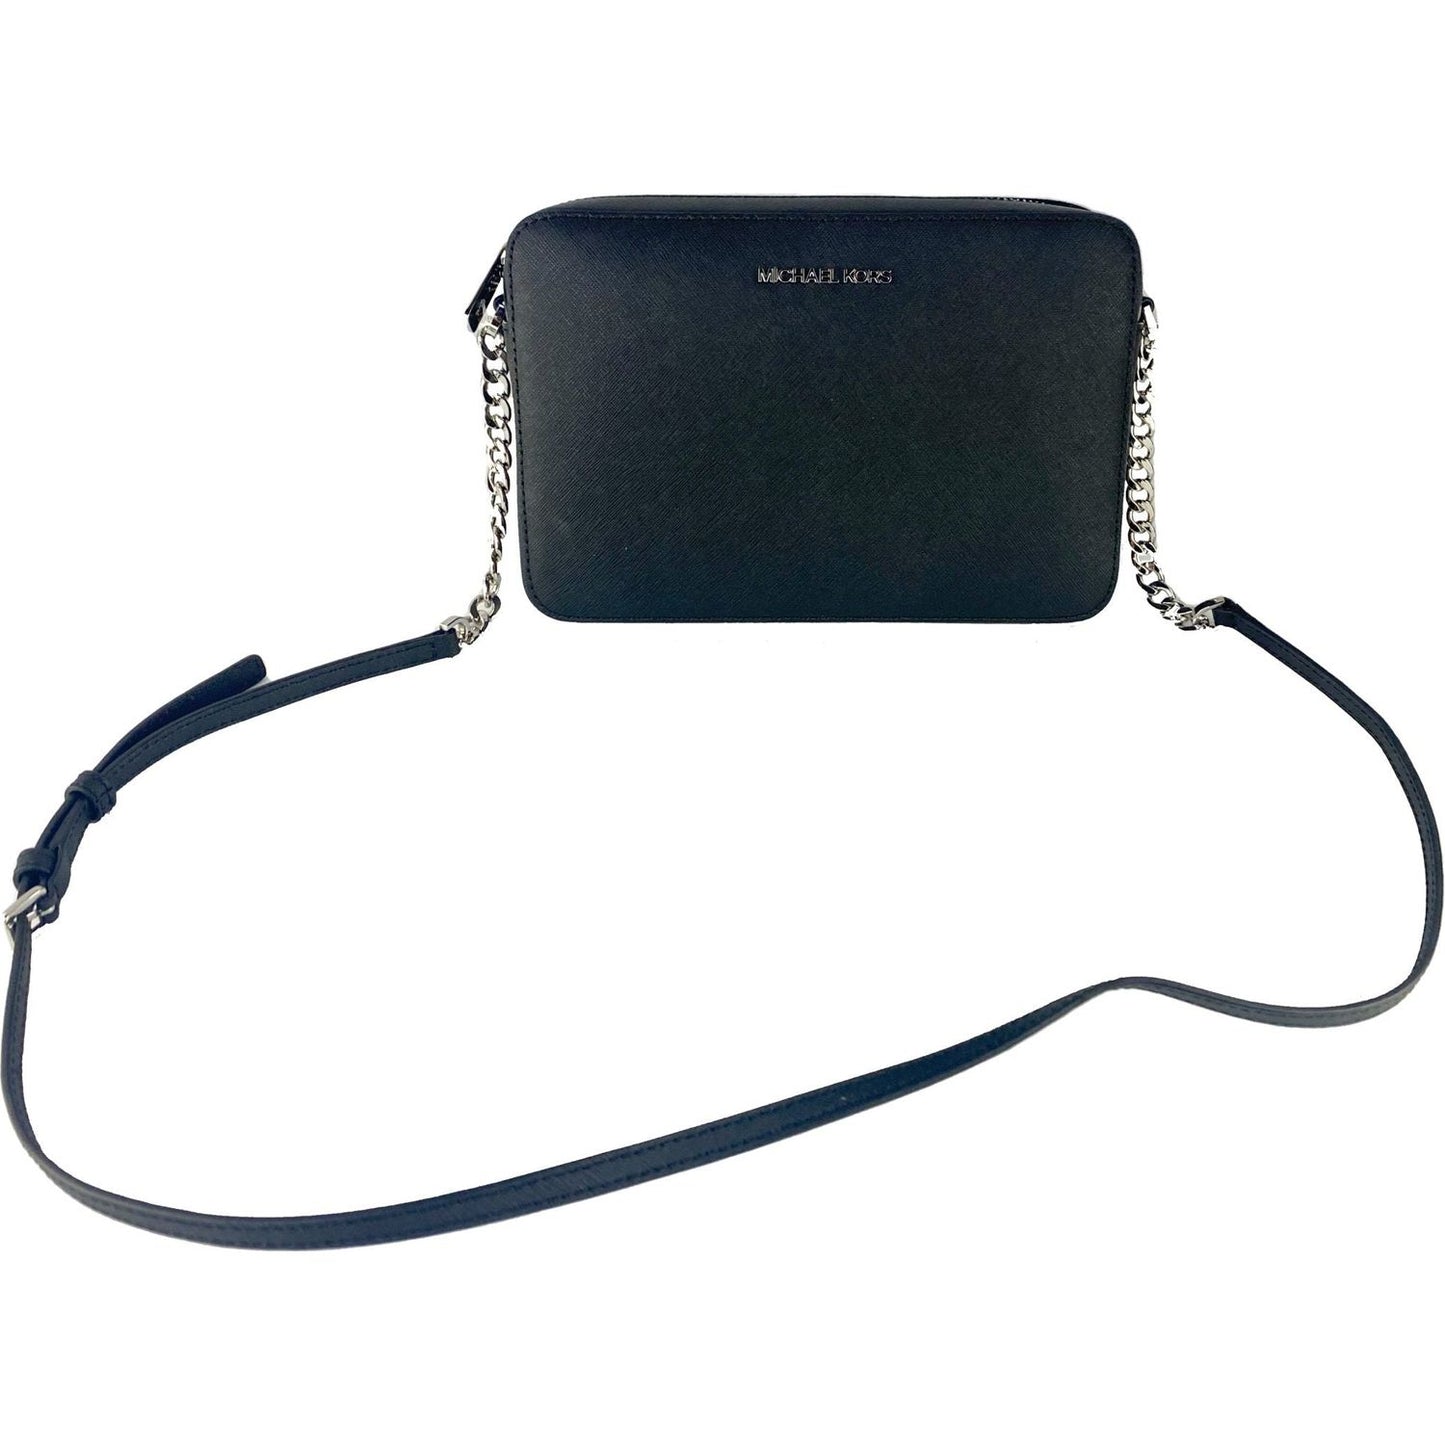 Michael Kors | Jet Set Large East West Saffiano Leather Crossbody Bag Handbag (Black Solid/Silver Hardware)| McRichard Designer Brands   